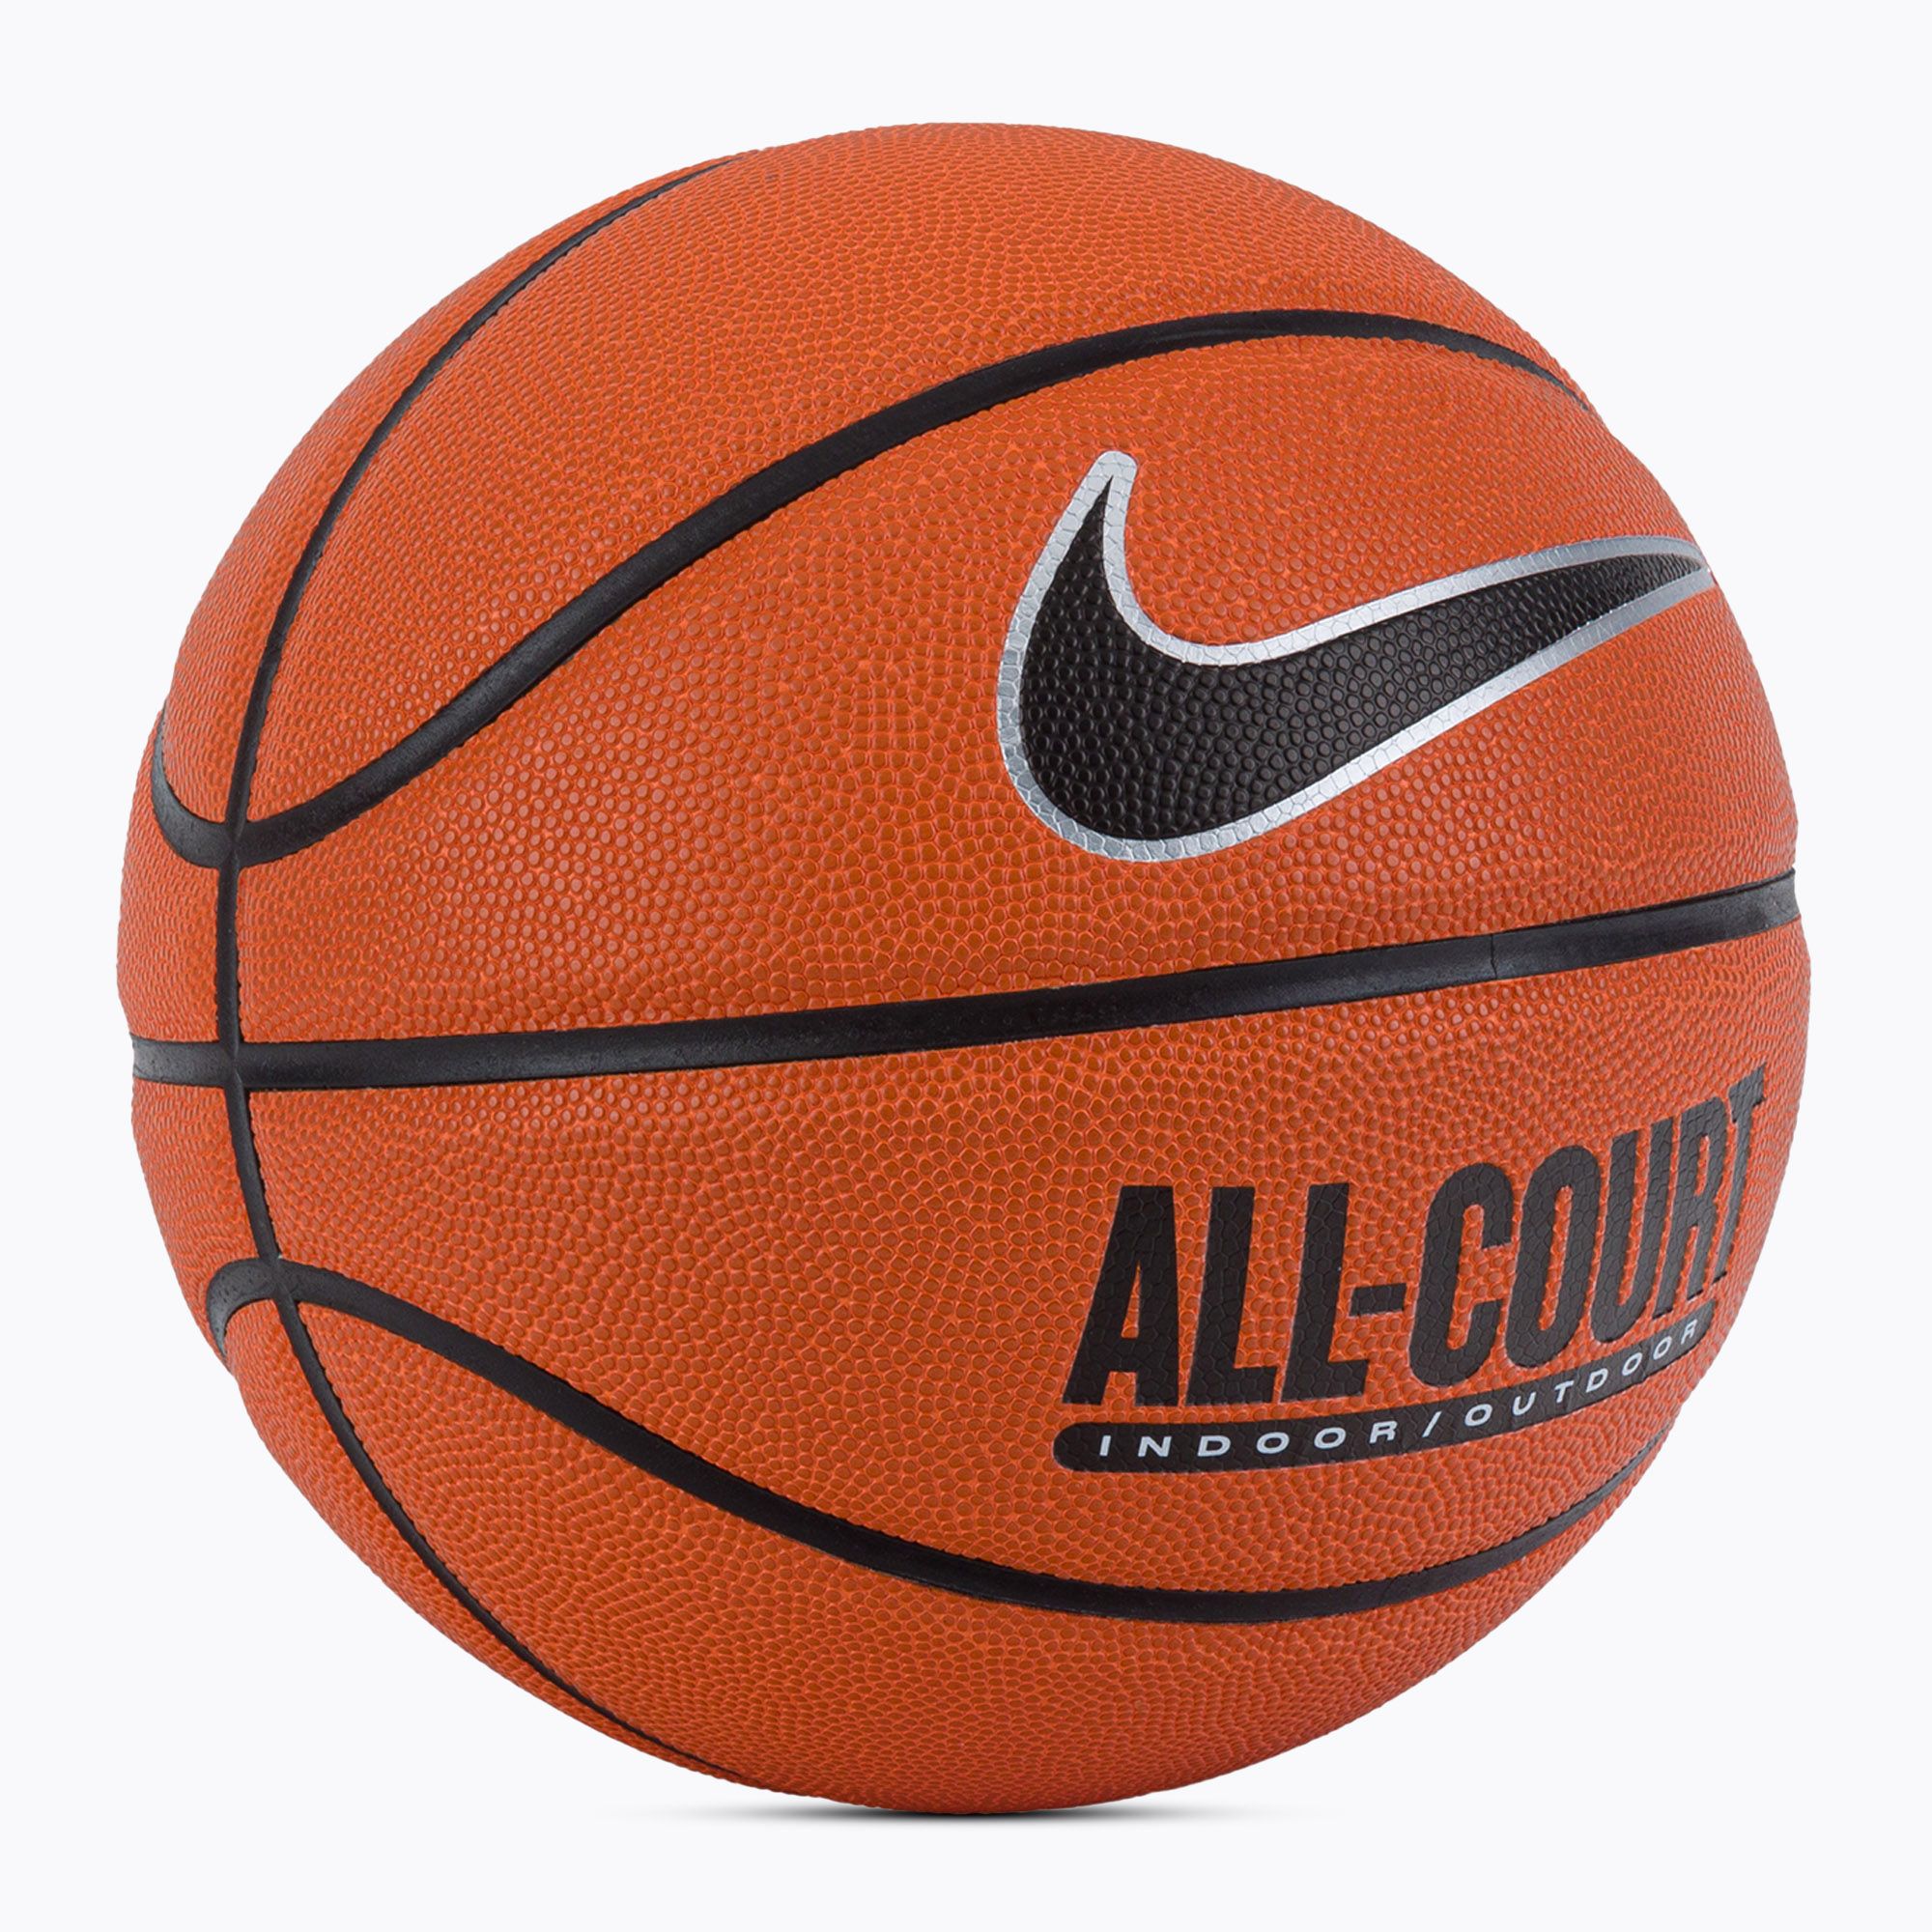 Piłka do koszykówki Nike Everyday All Court 8P Deflated amber/black/metallic silver rozmiar 7 zdjęcie nr 2